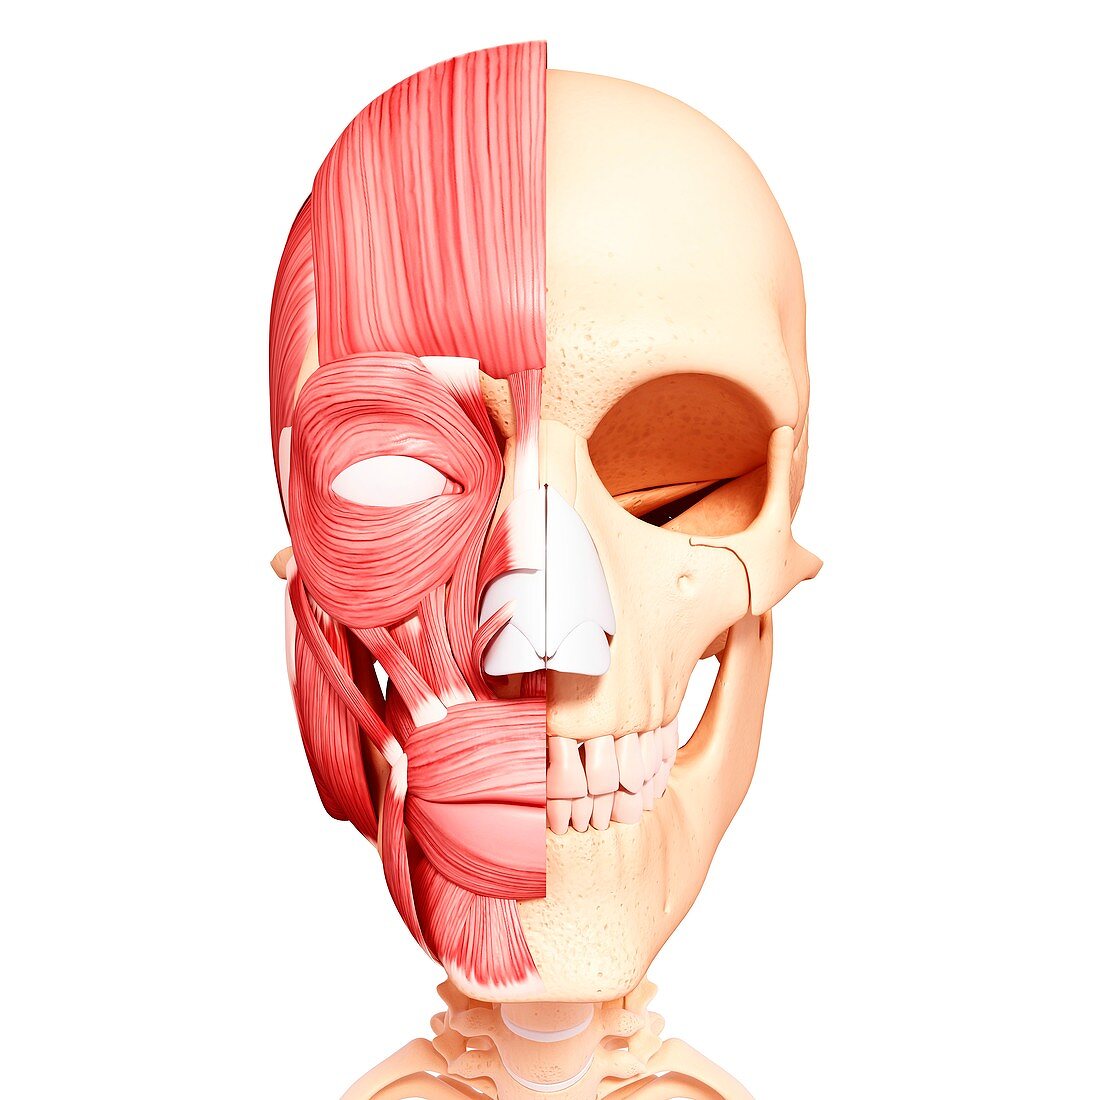 Human head musculature,artwork